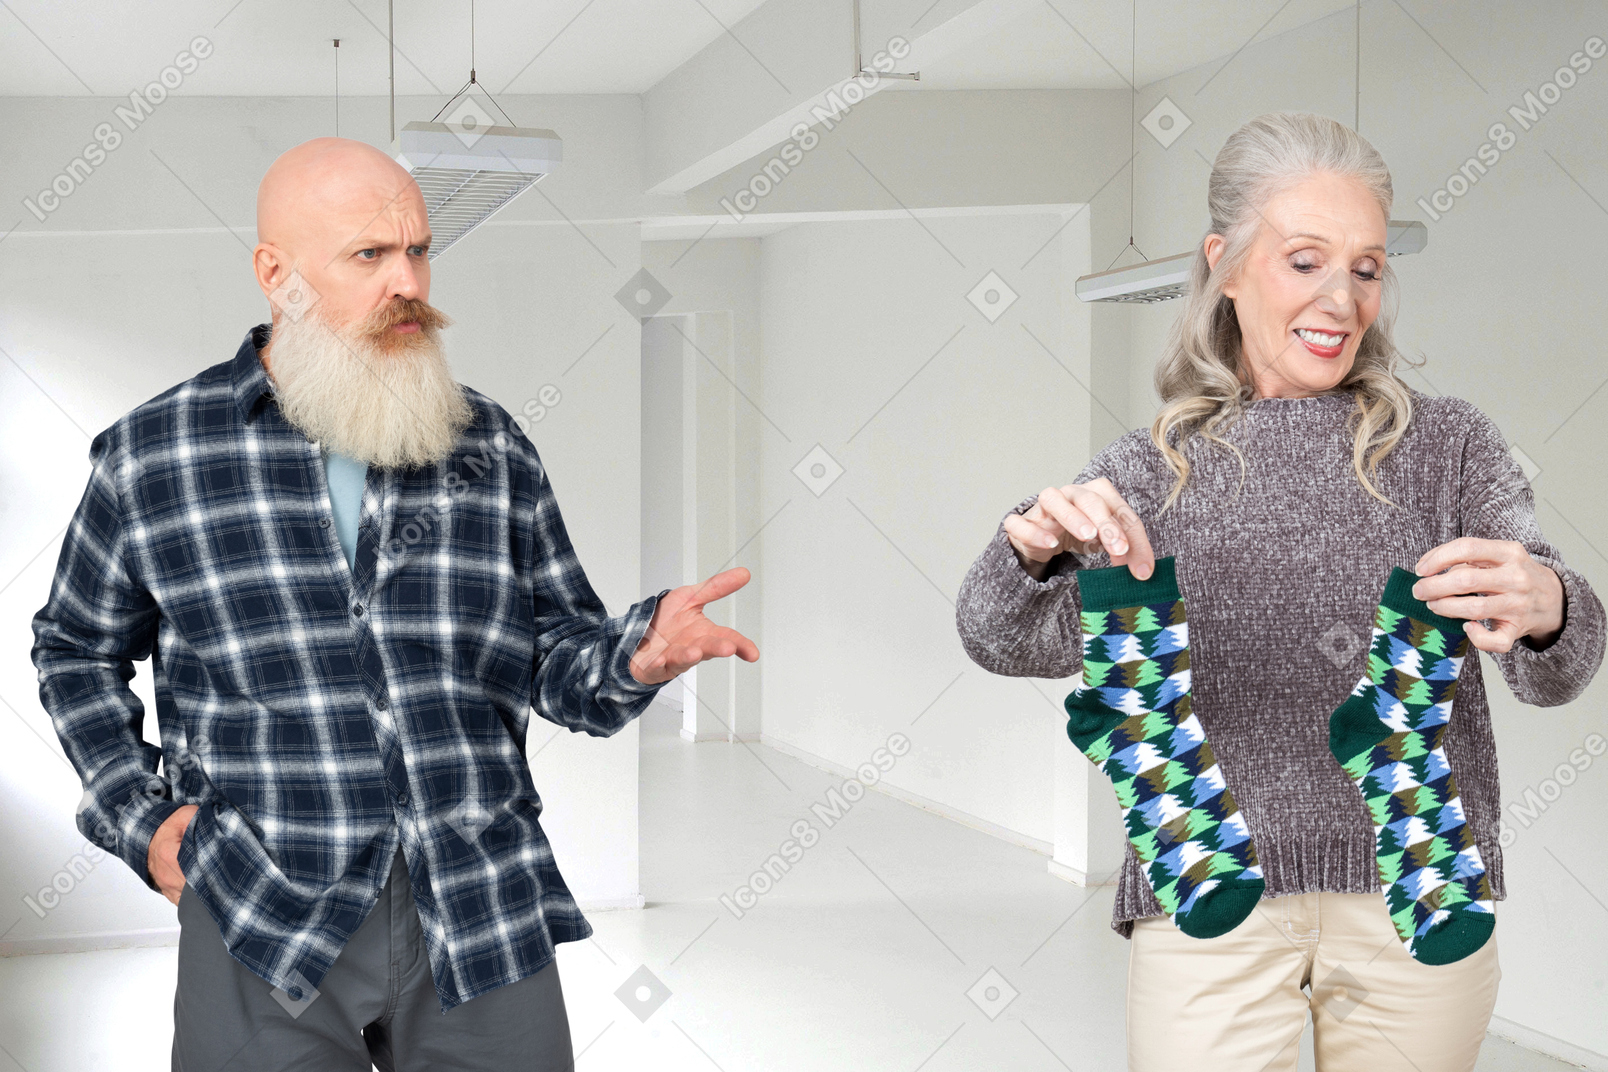 一个秃头的老头，灰白的胡子，惊讶地看着一位老太太，而她手里拿着几条绿色的袜子